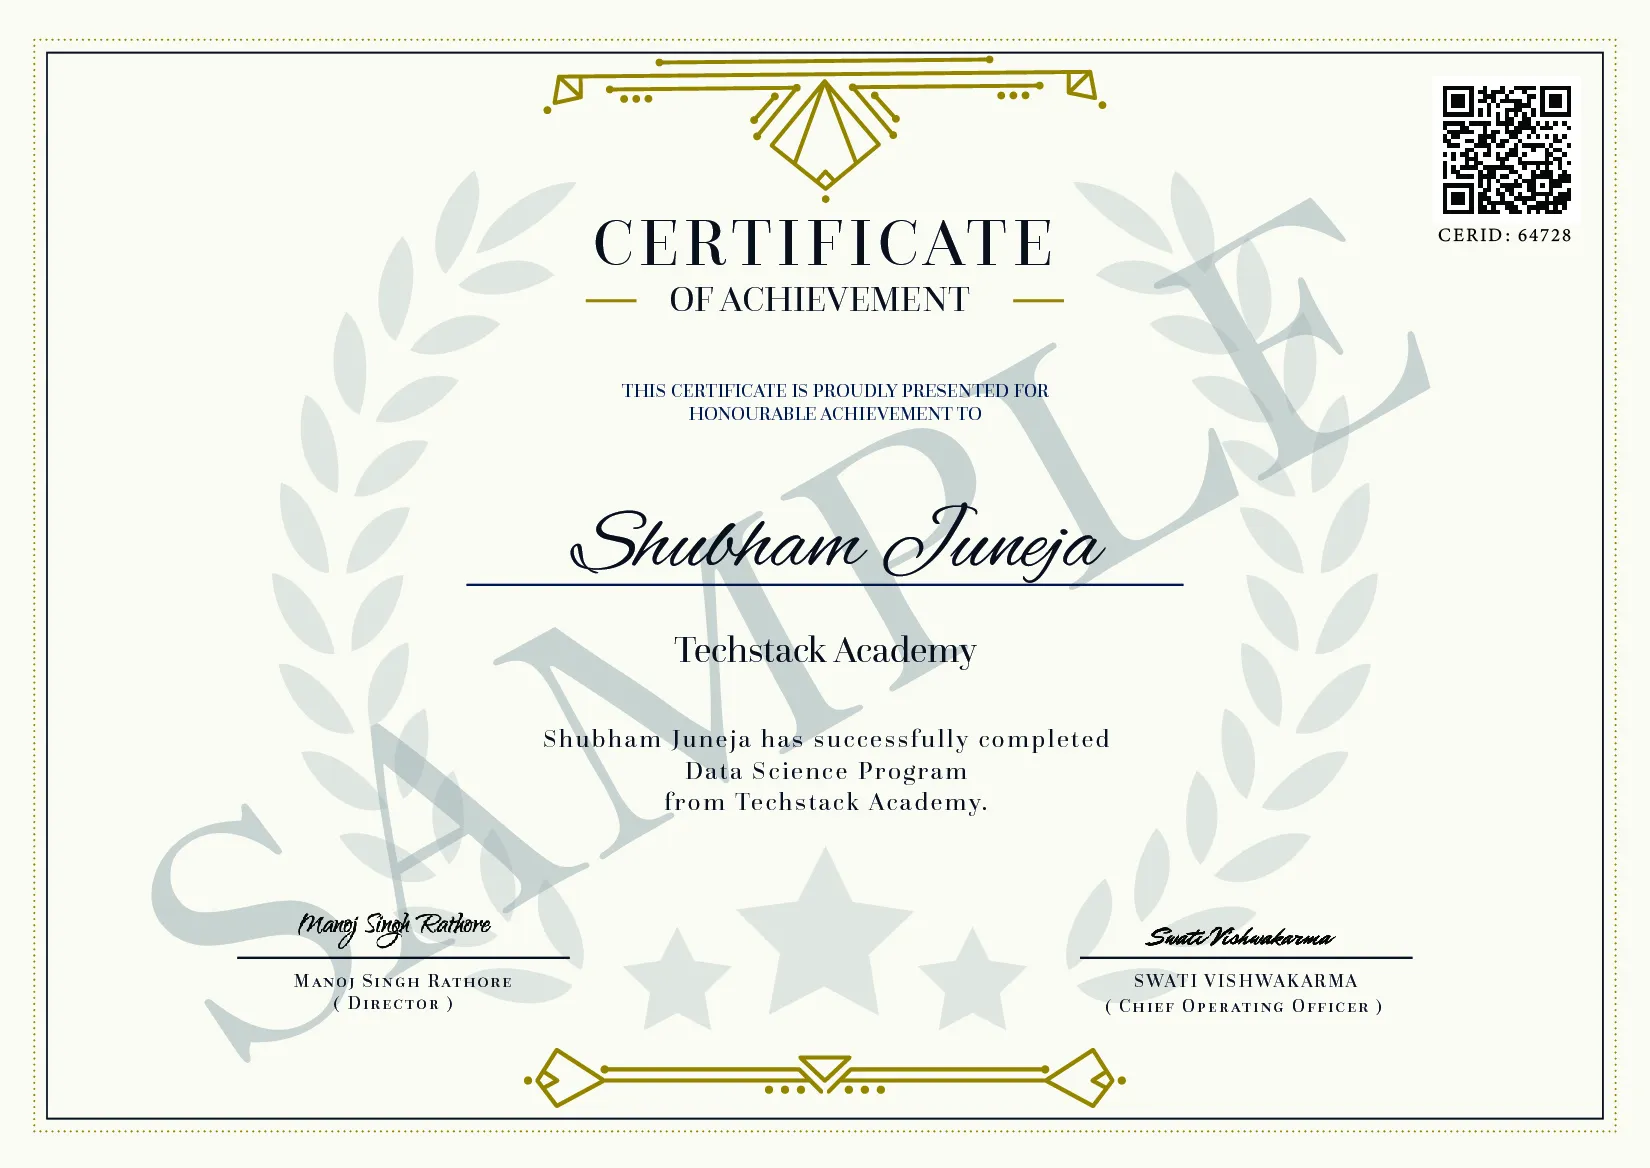  Master in Data Science Institute Certificate